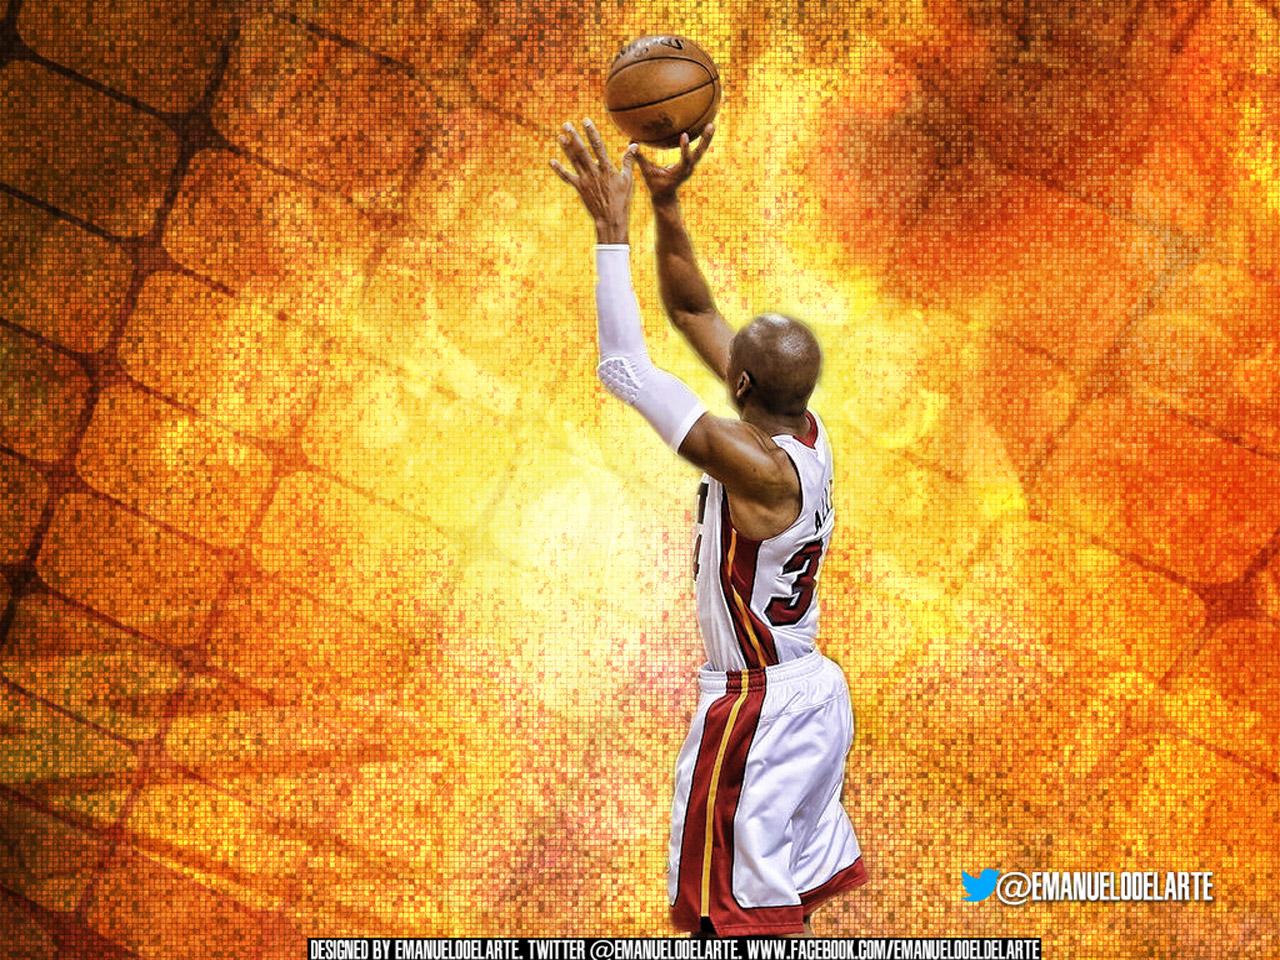 1280 x 960 · jpeg - Ray Allen 2013 Finals Game 6 Shot 1280960 Wallpaper | Basketball ...